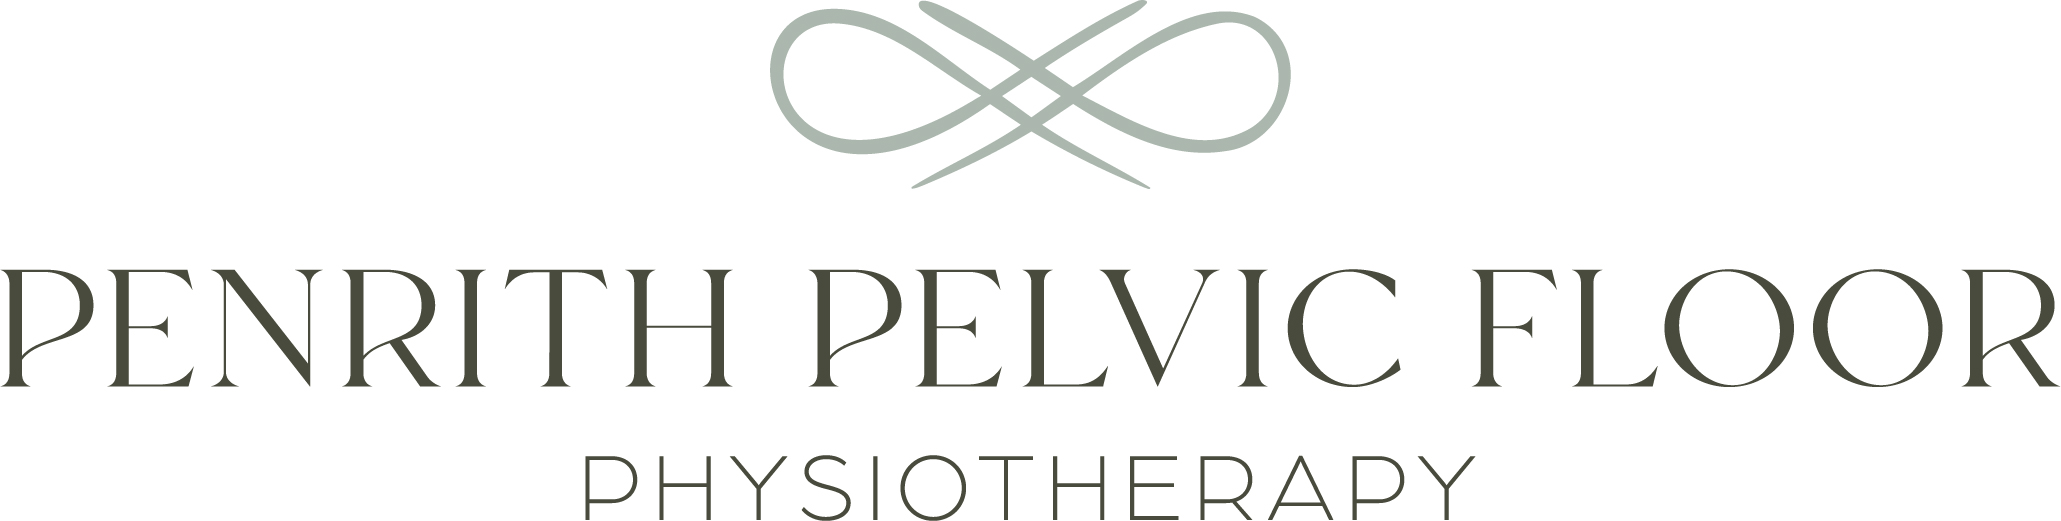 Penrith Pelvic Floor Physio logo